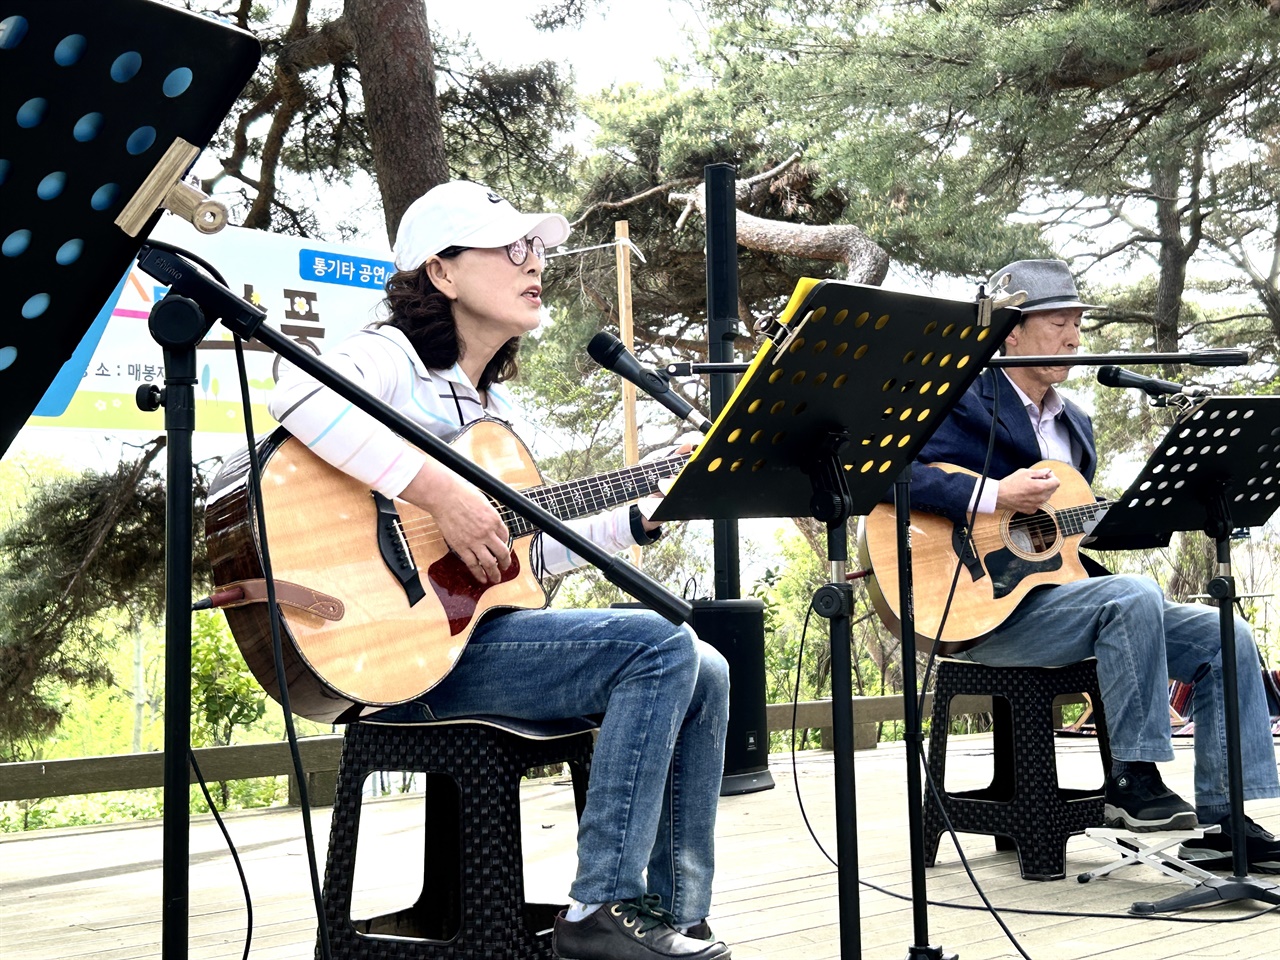 28일 오후 홍성지역 어쿠스틱 통기타 동아리 ‘소담소리’는 ‘봄 소풍’이라는 주제로 매봉재에서 숲속 음악회를 열었다.